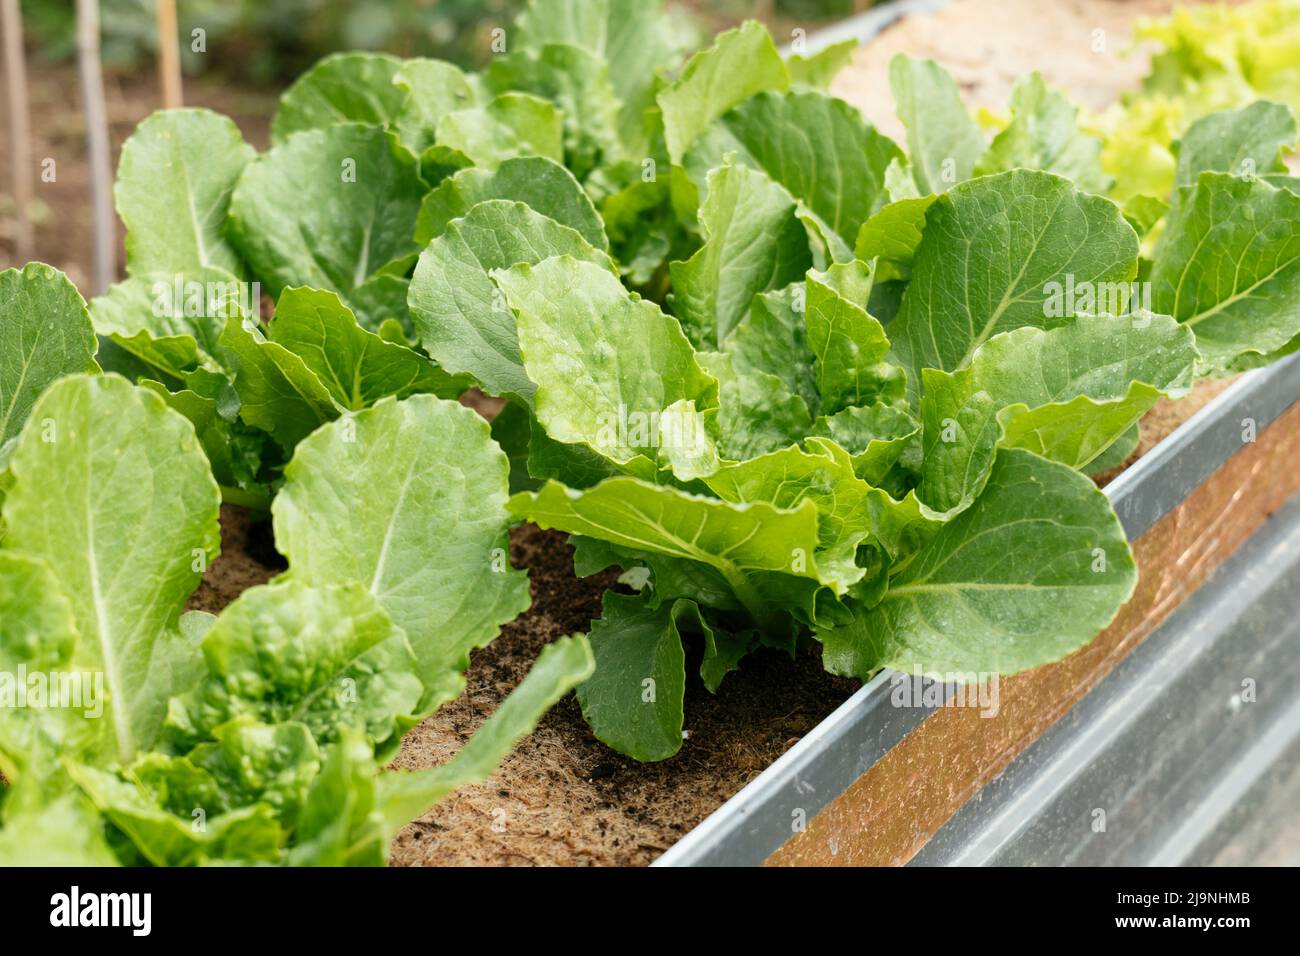 Valmaine romaine Salatpflanzen wachsen in einem Hochbett Stockfoto